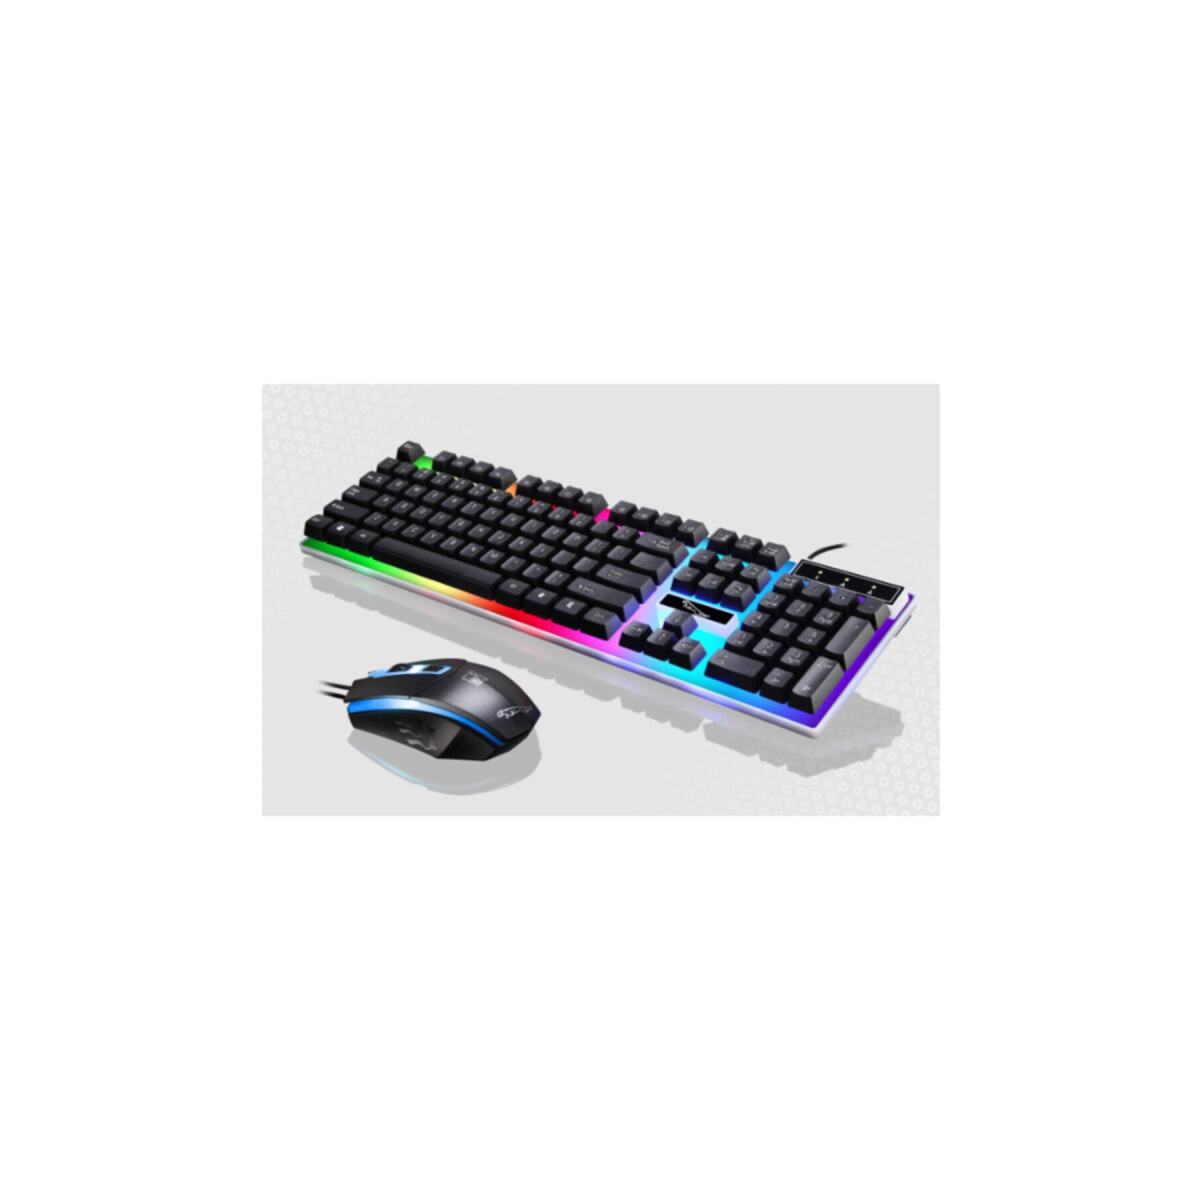 G21 Usb Led Işıklı Oyuncu Klavye Ve Mouse Set - Siyah